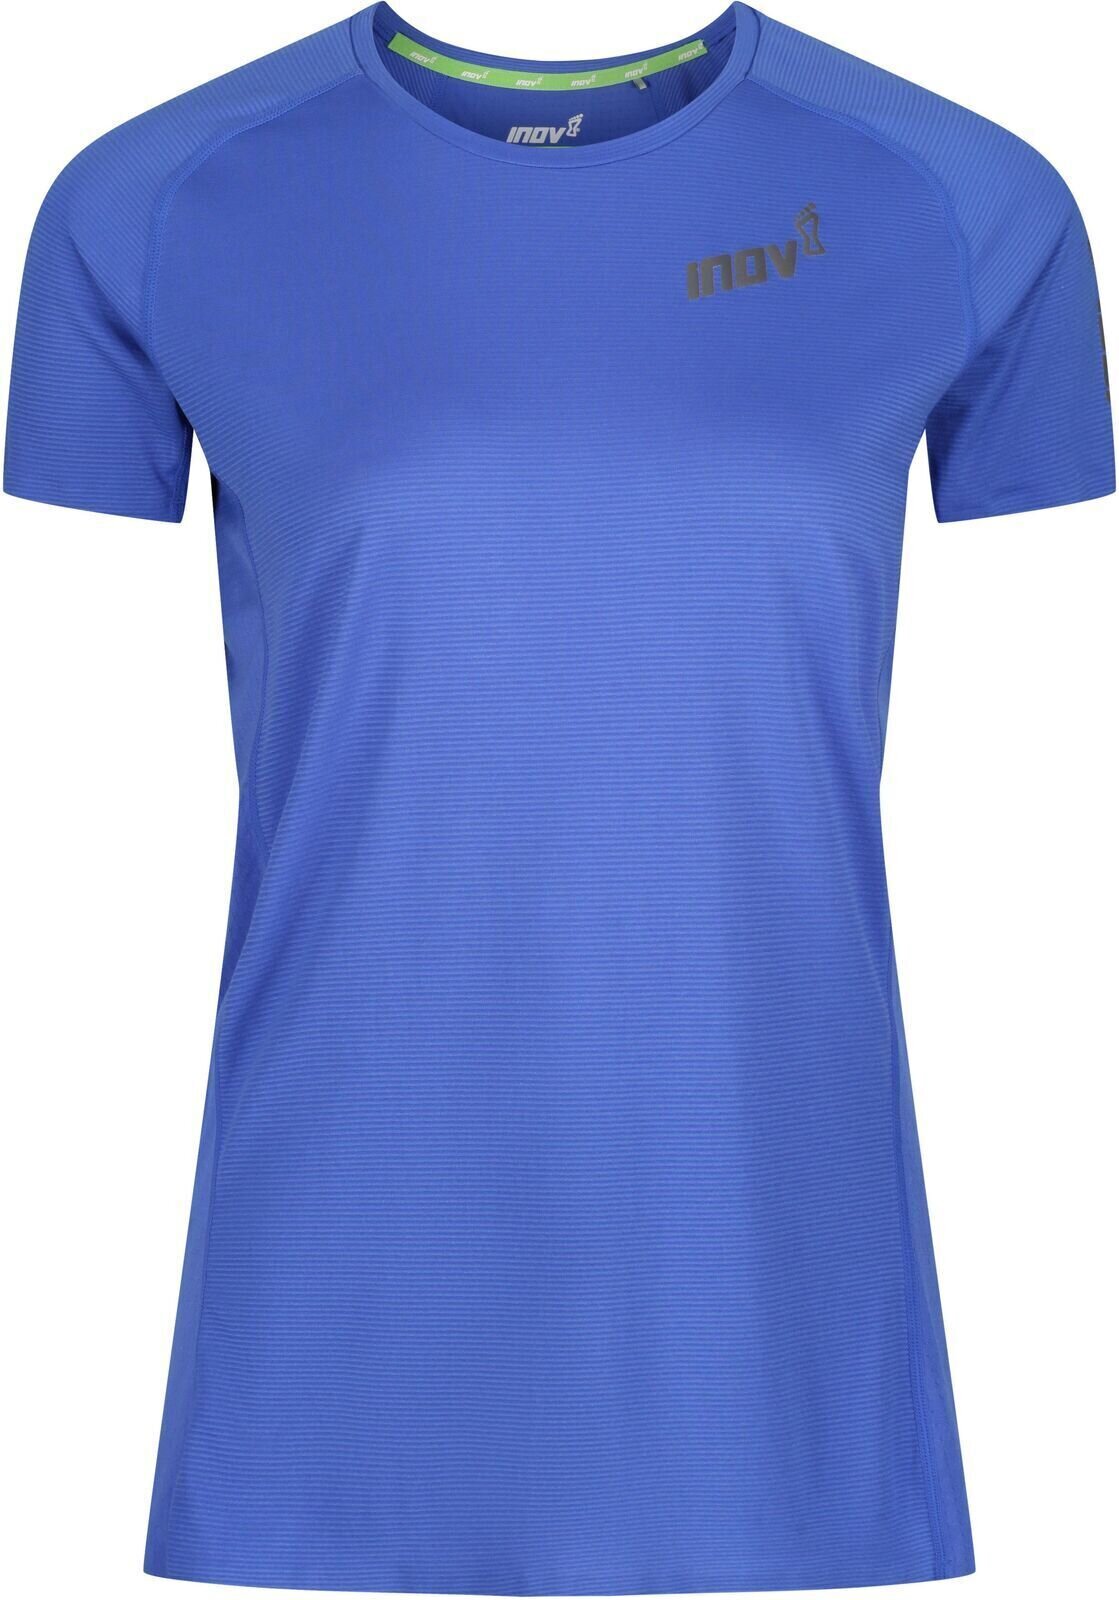 Bežecké tričko s krátkym rukávom
 Inov-8 Baso Elite Blue 38 Bežecké tričko s krátkym rukávom